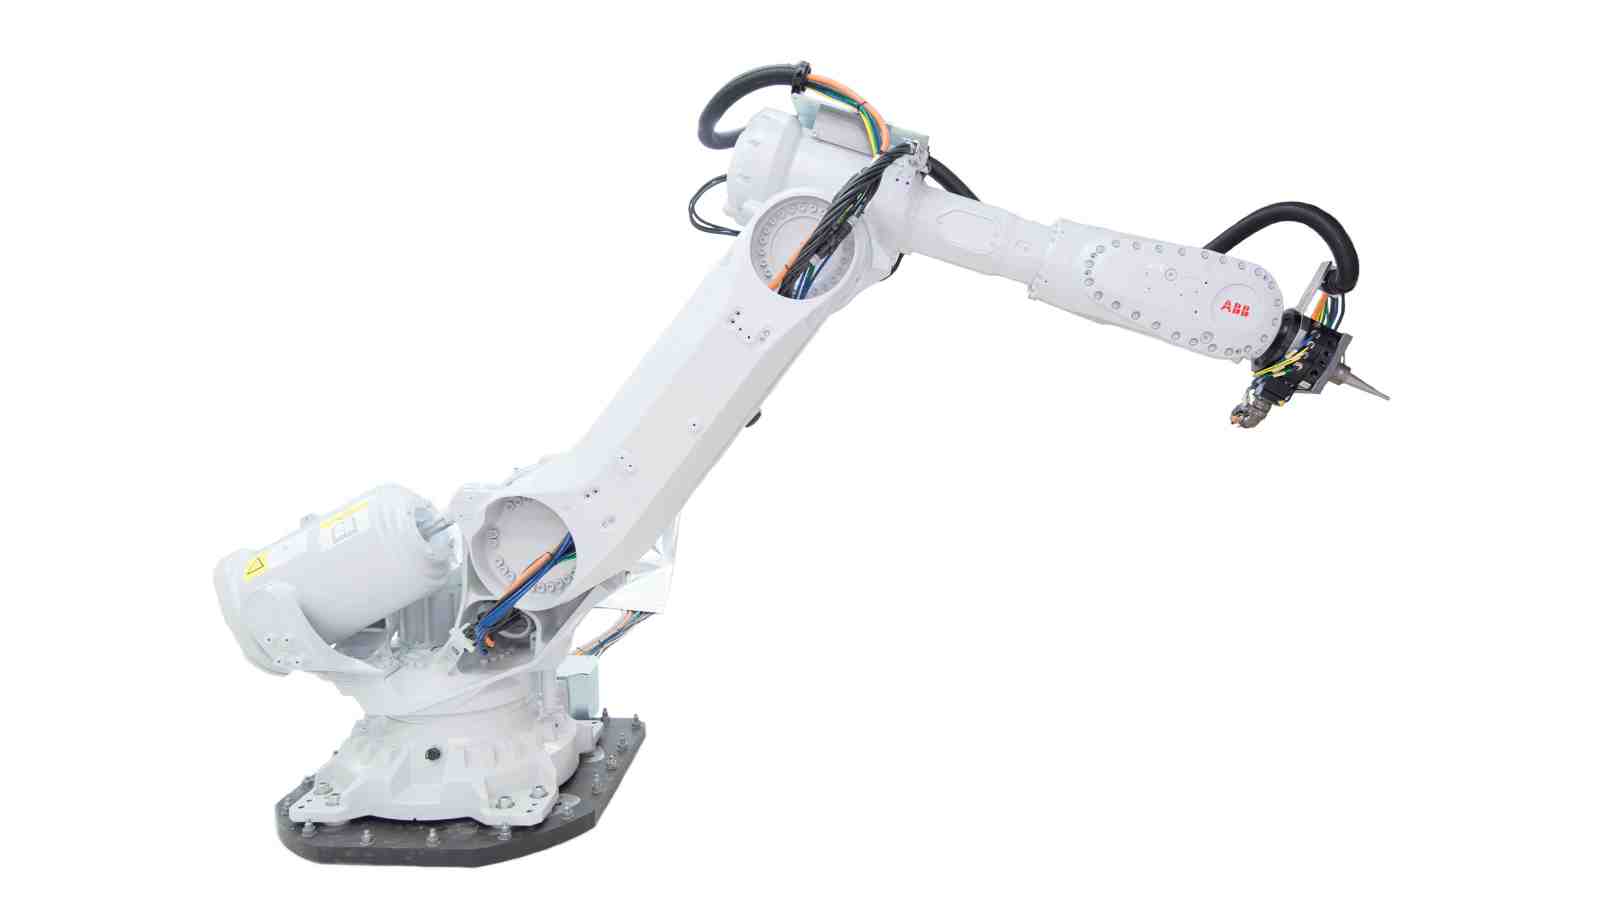 Giant robotic arm prototype